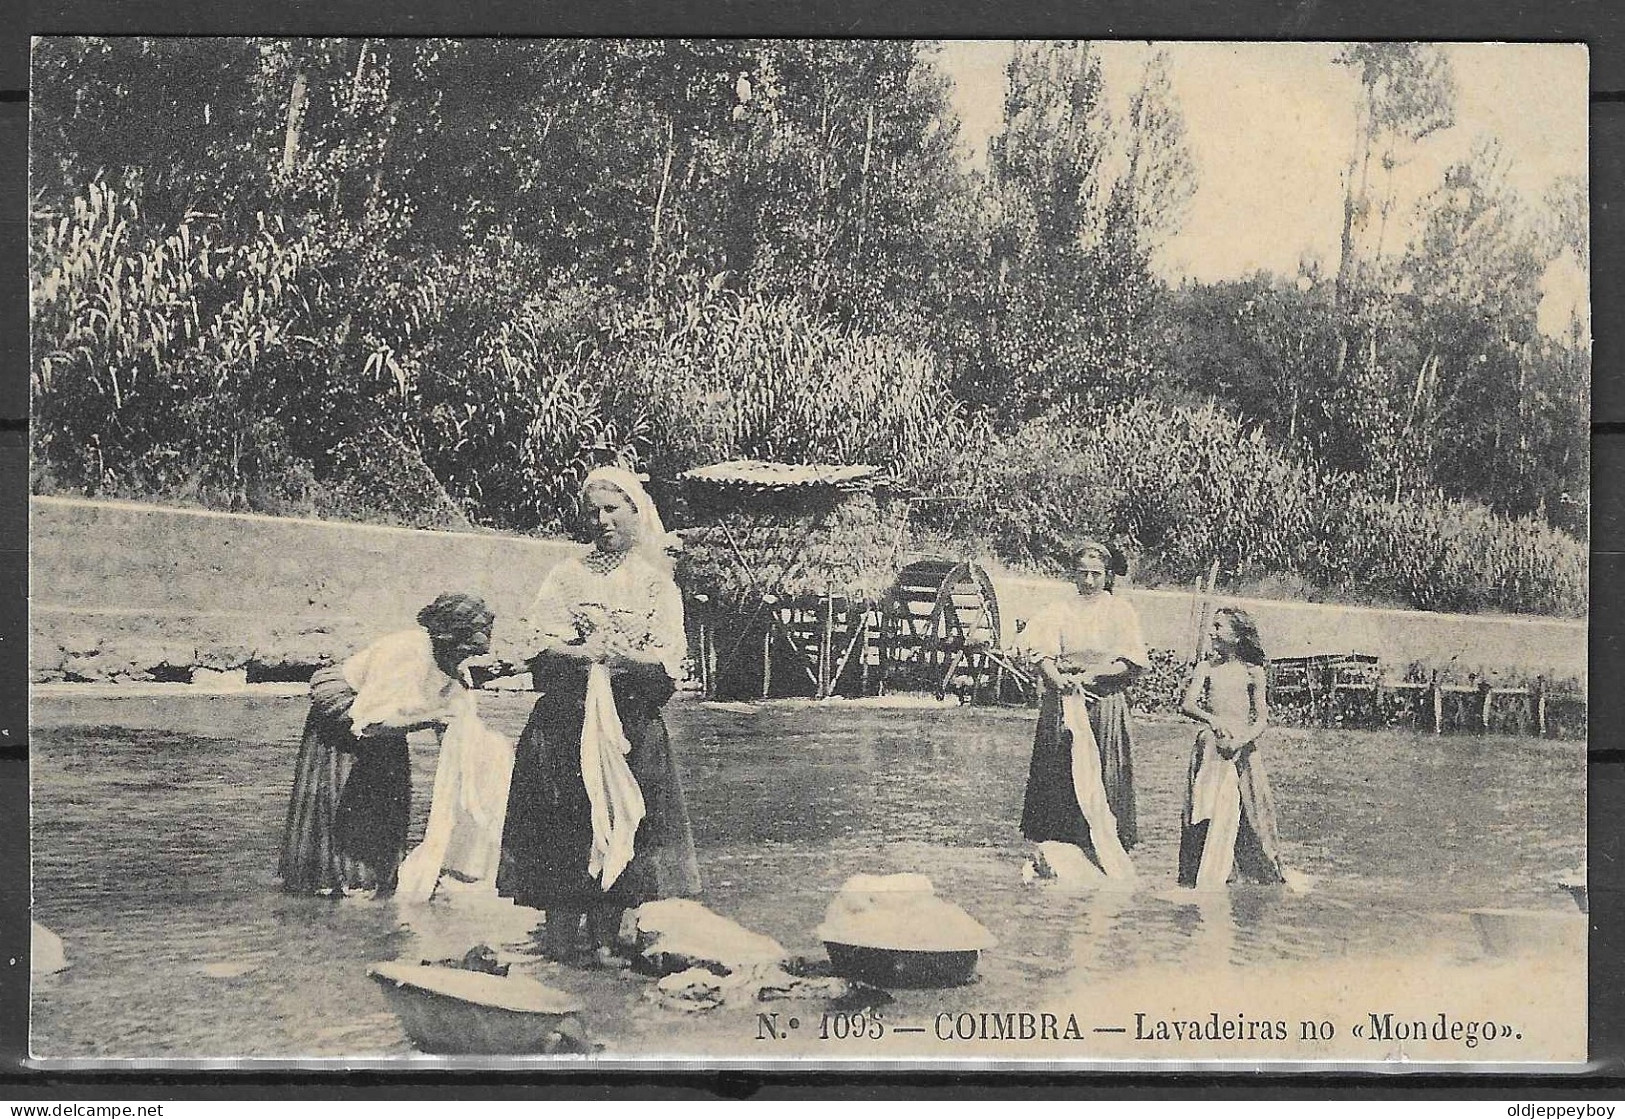 COIMBRA Costumes * Illustrated Monochrome Postcard "Laundress In Mondego", Edições Alberto Malva. New, Good Condition. - Mozambico